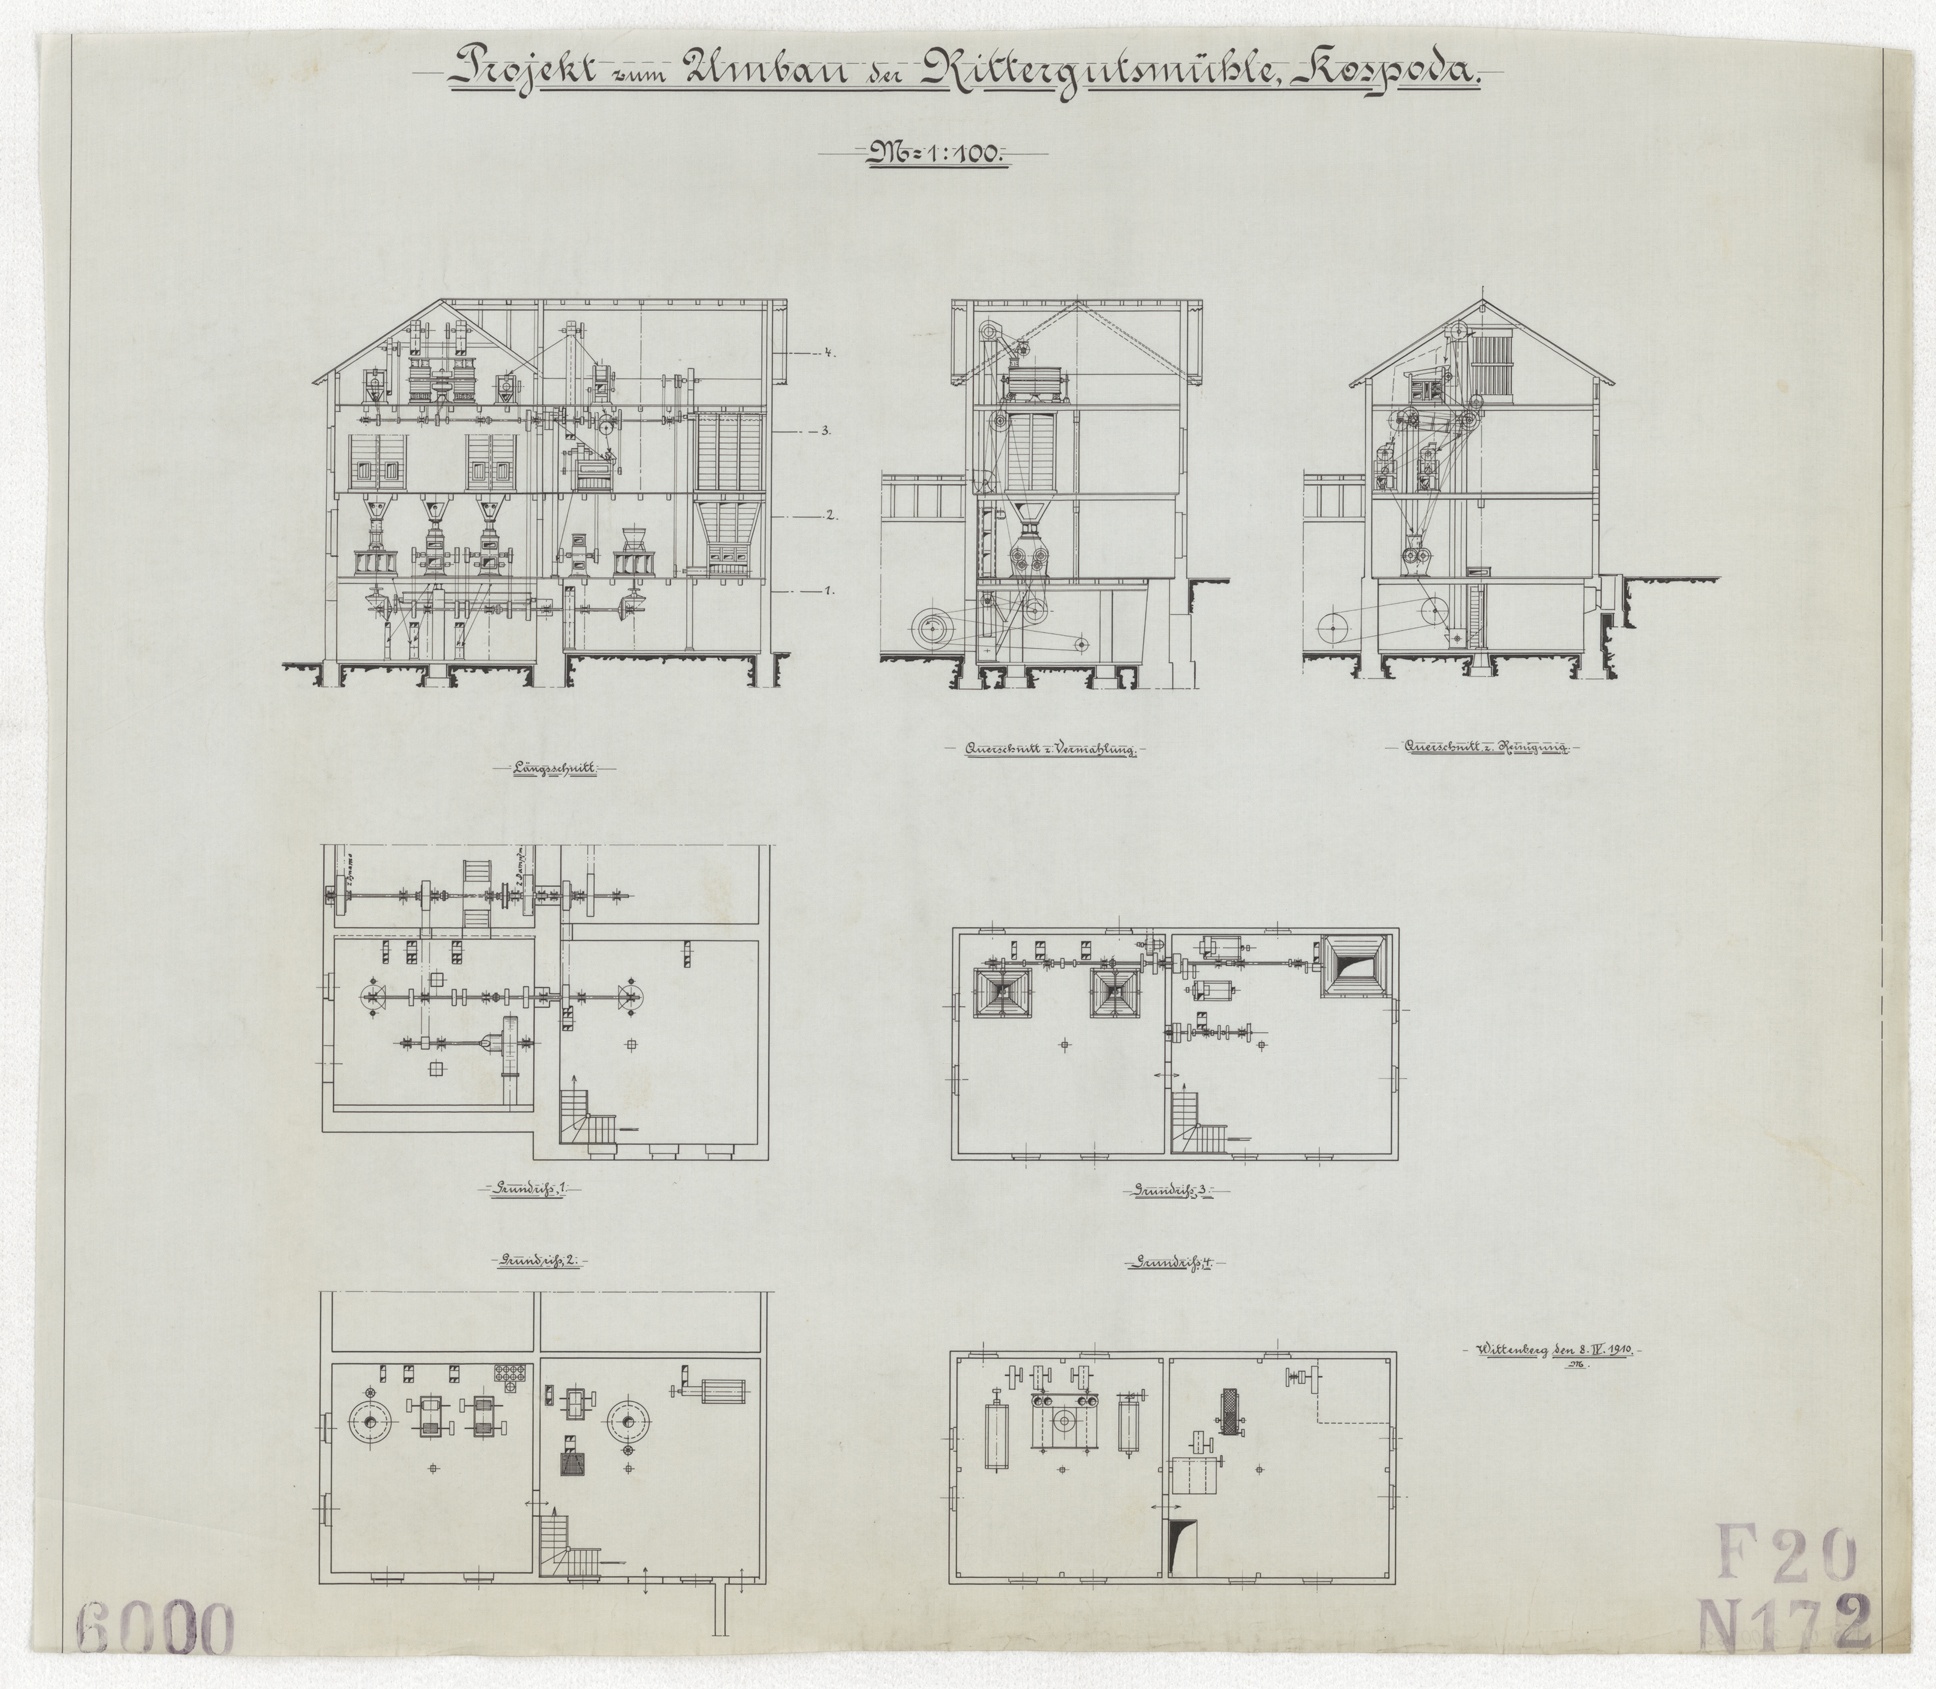 Technische Zeichnung : Projekt zum Umbau der Rittergutsmühle, Kospoda (Stiftung Deutsches Technikmuseum Berlin CC BY-SA)